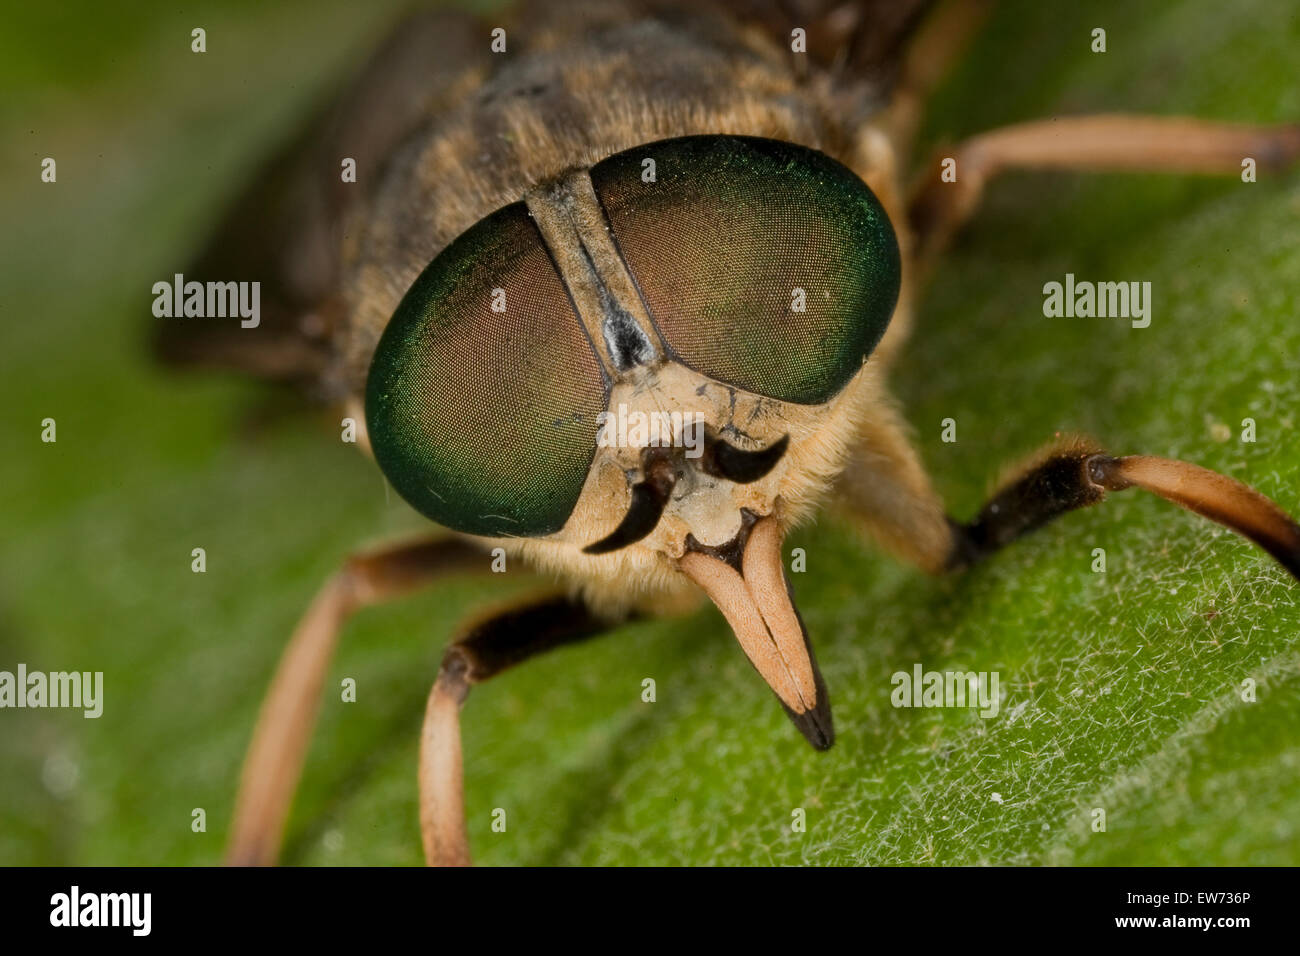 Large horsefly, Rinder-Bremse, Rinderbremse, Bremse, Bremsen, Tabanus bovinus, Portrait, Porträt, Stechrüssel, Auge, eye, eyes Stock Photo